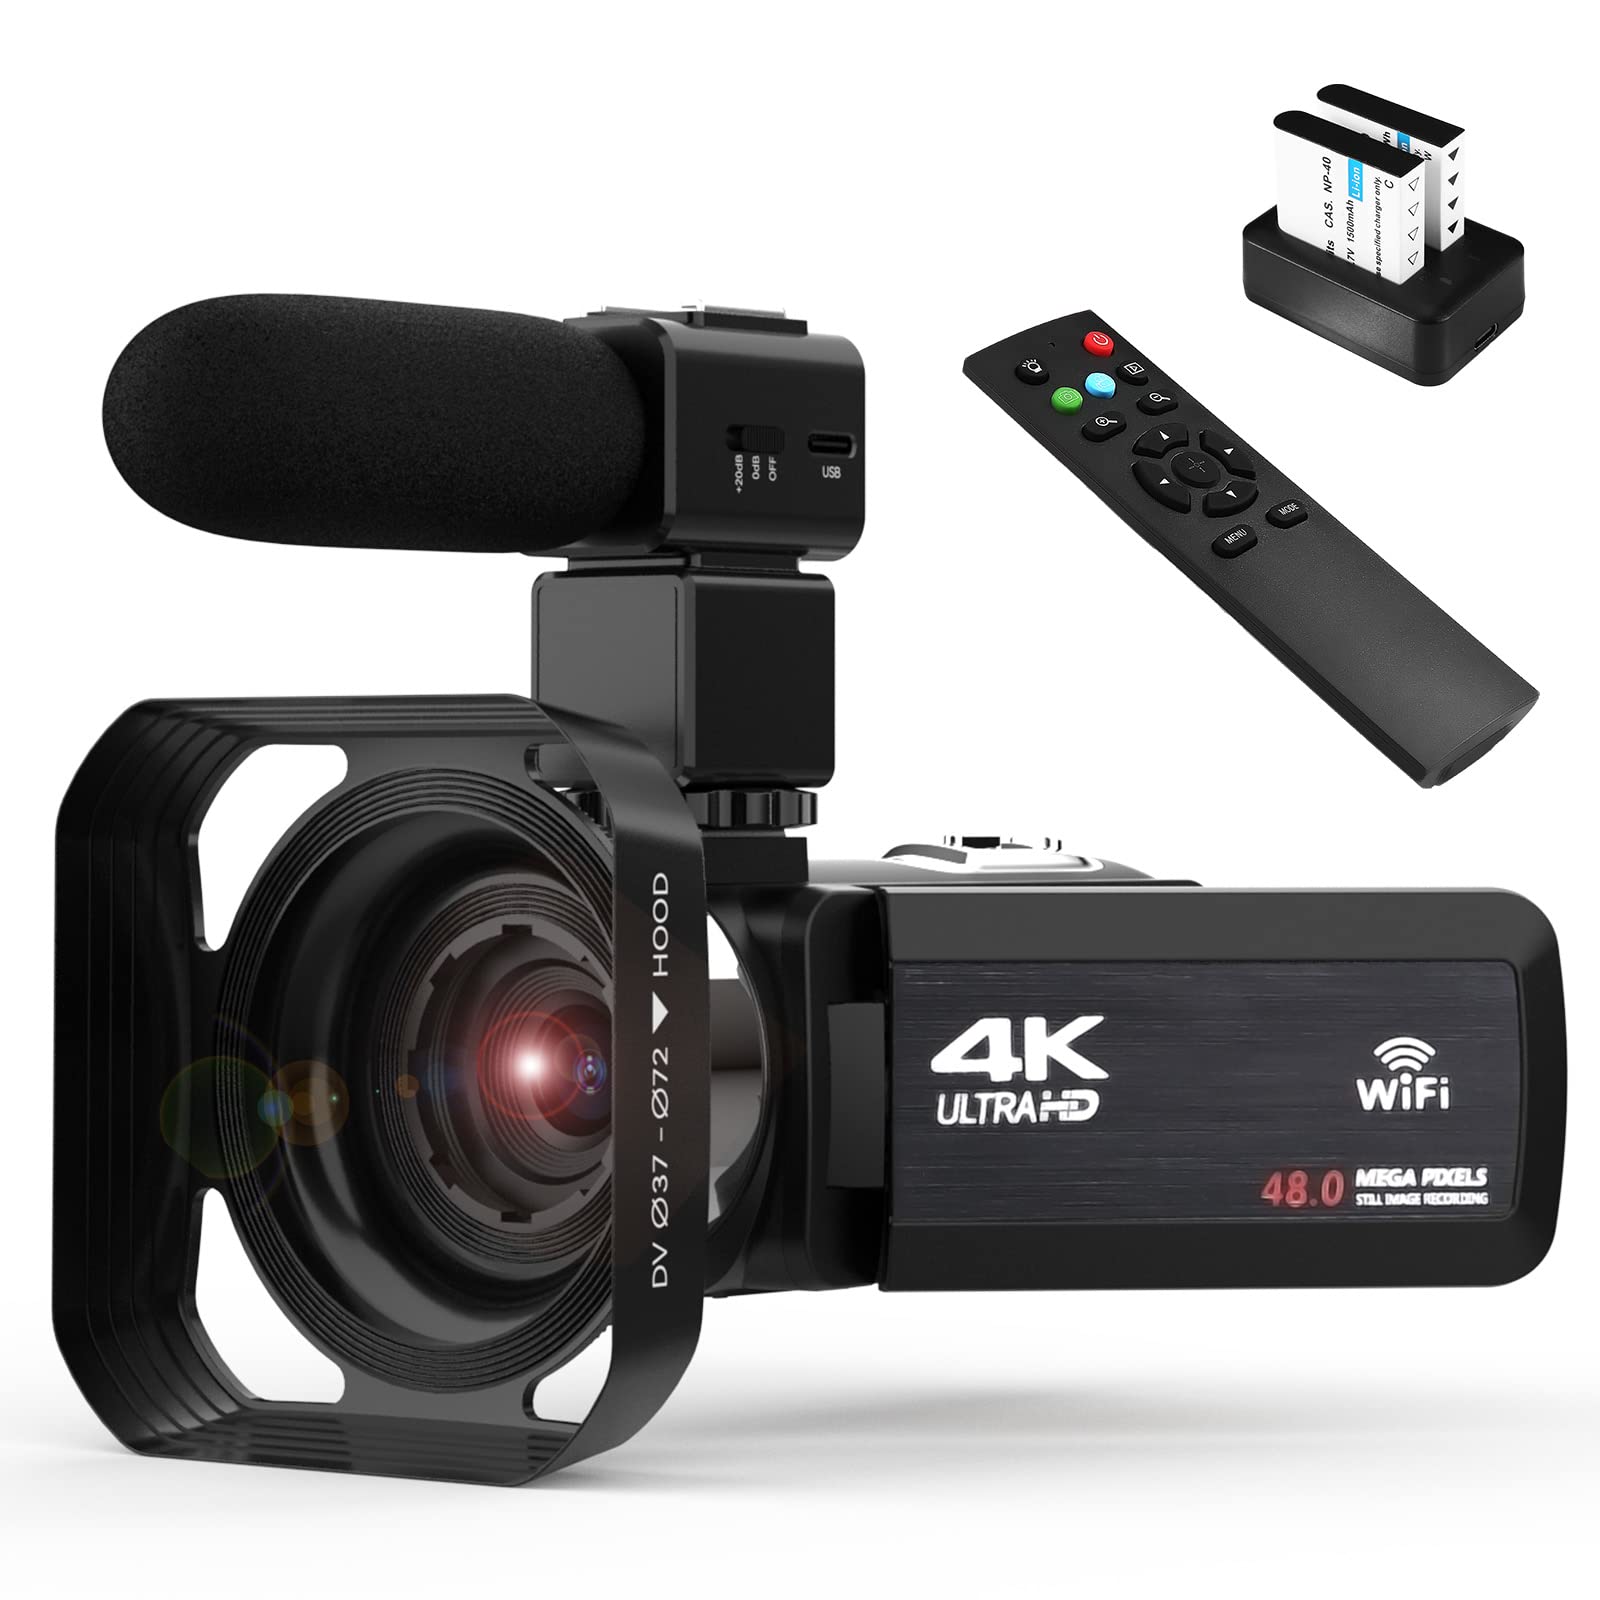 OIEXI 4k Video Camera Camcorder con Zoom Digital 18X, Cámara para